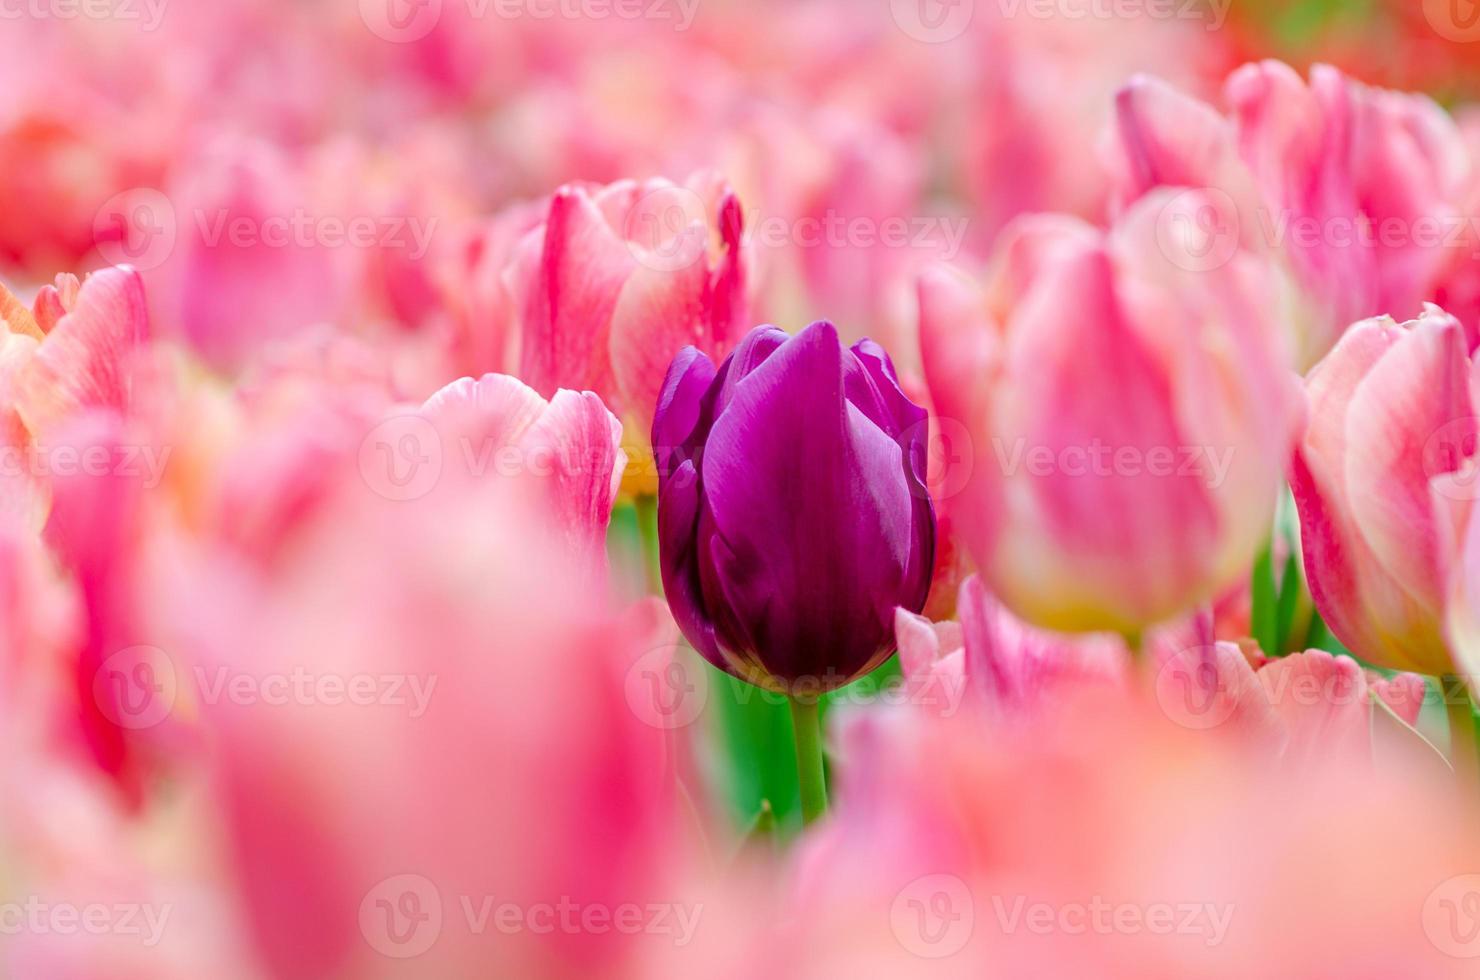 los tulipanes morados se encuentran entre los tulipanes rosas. foto